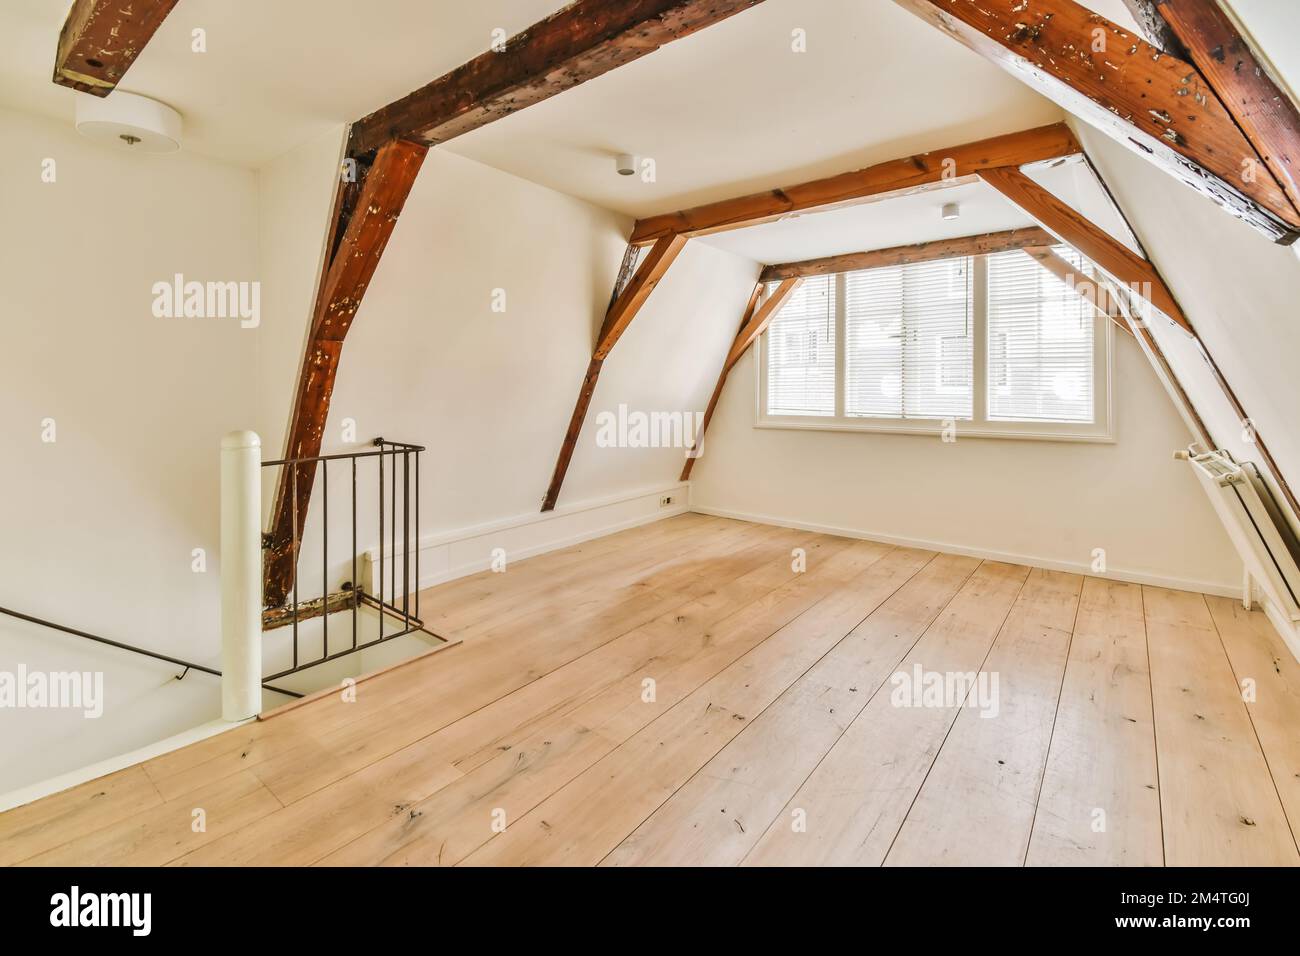 Ein Zimmer im Dachgeschoss-Stil mit Holzfußboden und freiliegenden Balken an der Decke in diesem Haus ist sehr gut eingerichtet Stockfoto